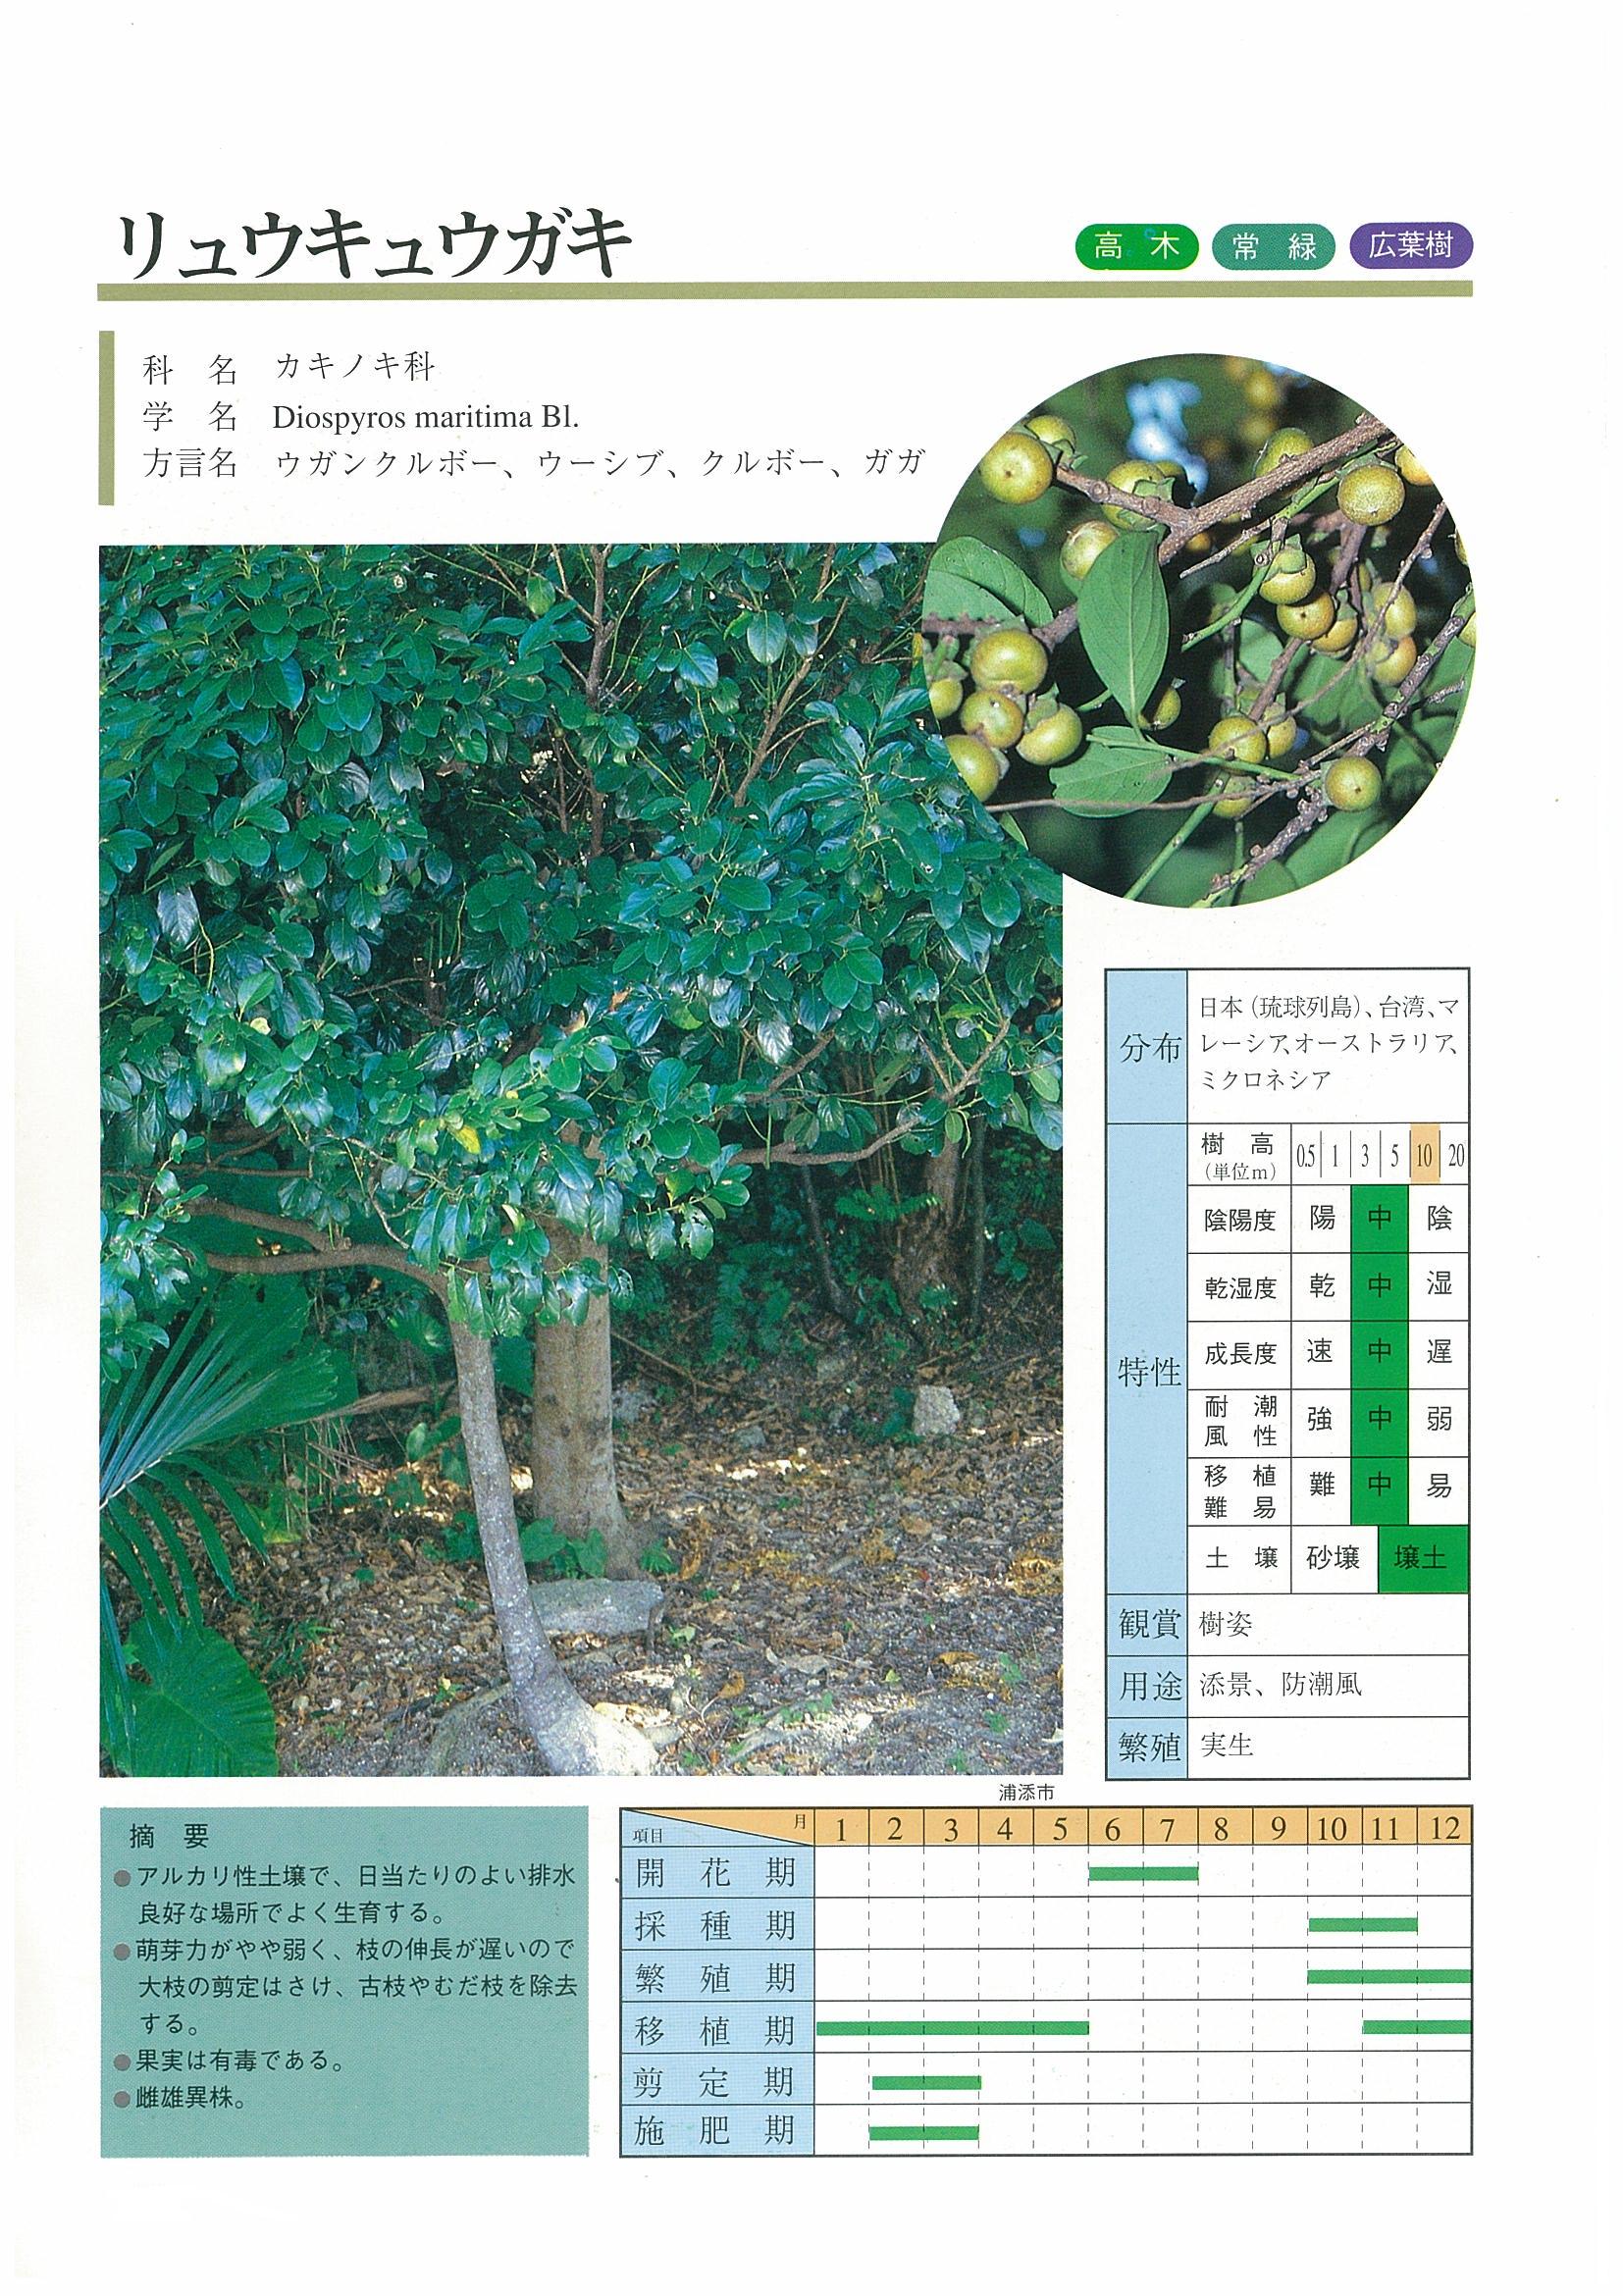 ☆新・緑化樹木のしおり 沖縄県土木建築部監修 （新緑化樹木・植物 